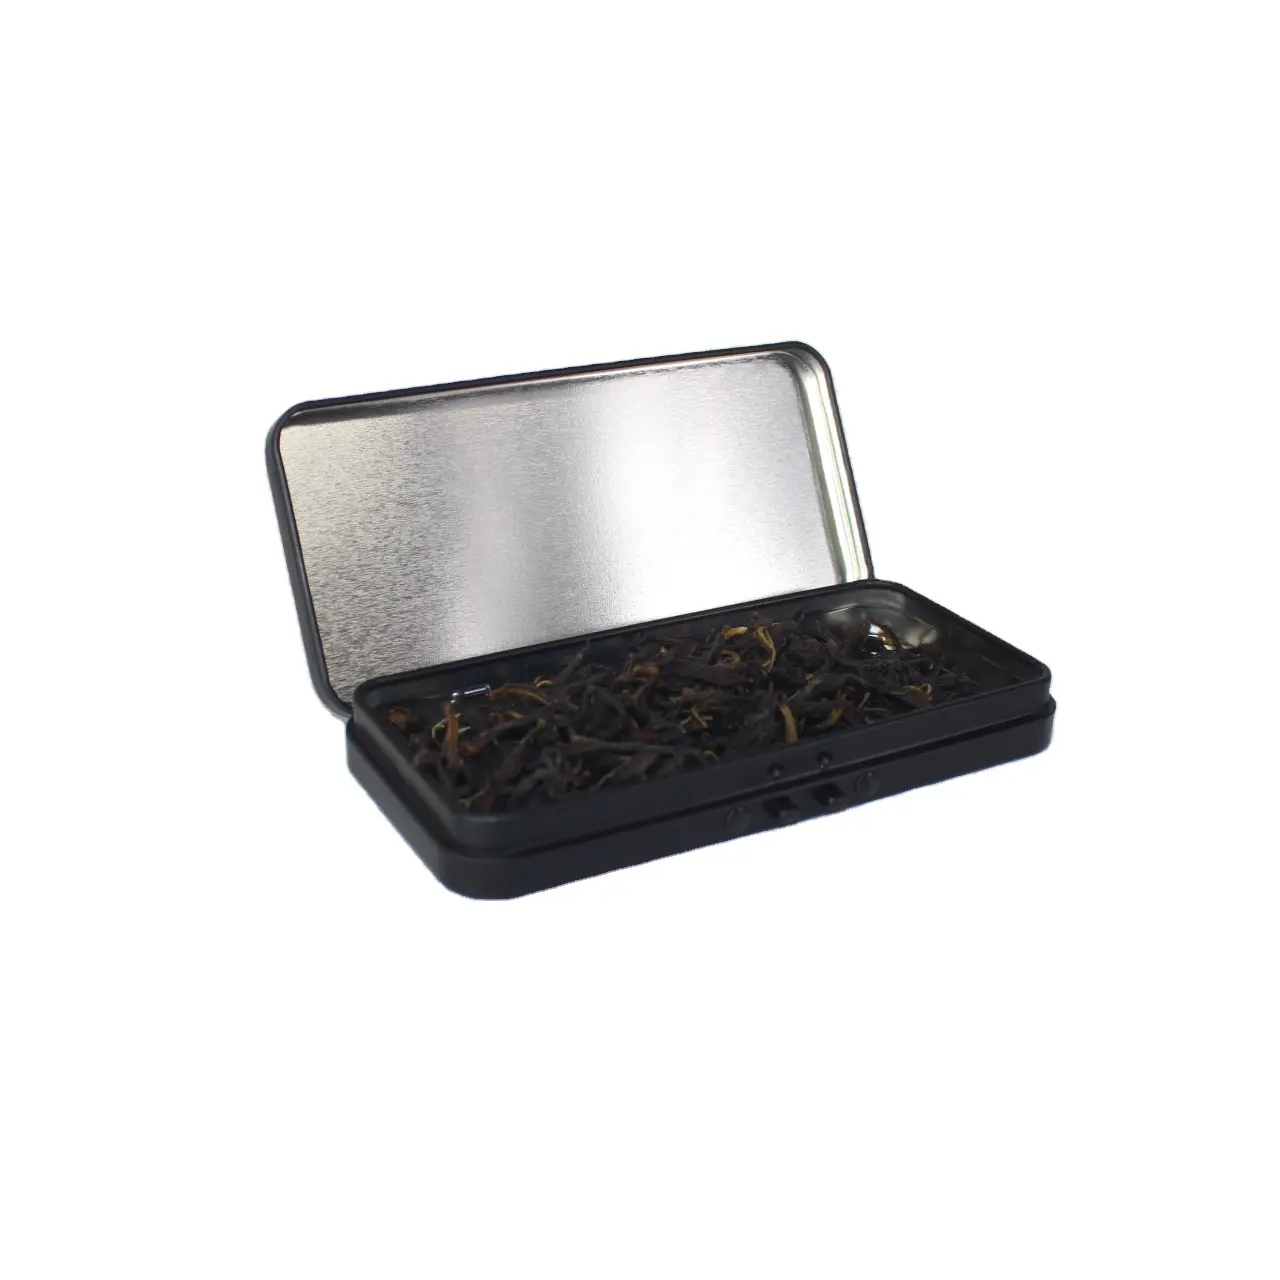 高品質の金属長方形の空のヒンジ付きブリキの箱の容器最小の小さな収納ブリキの箱カスタムキャンディーボックス